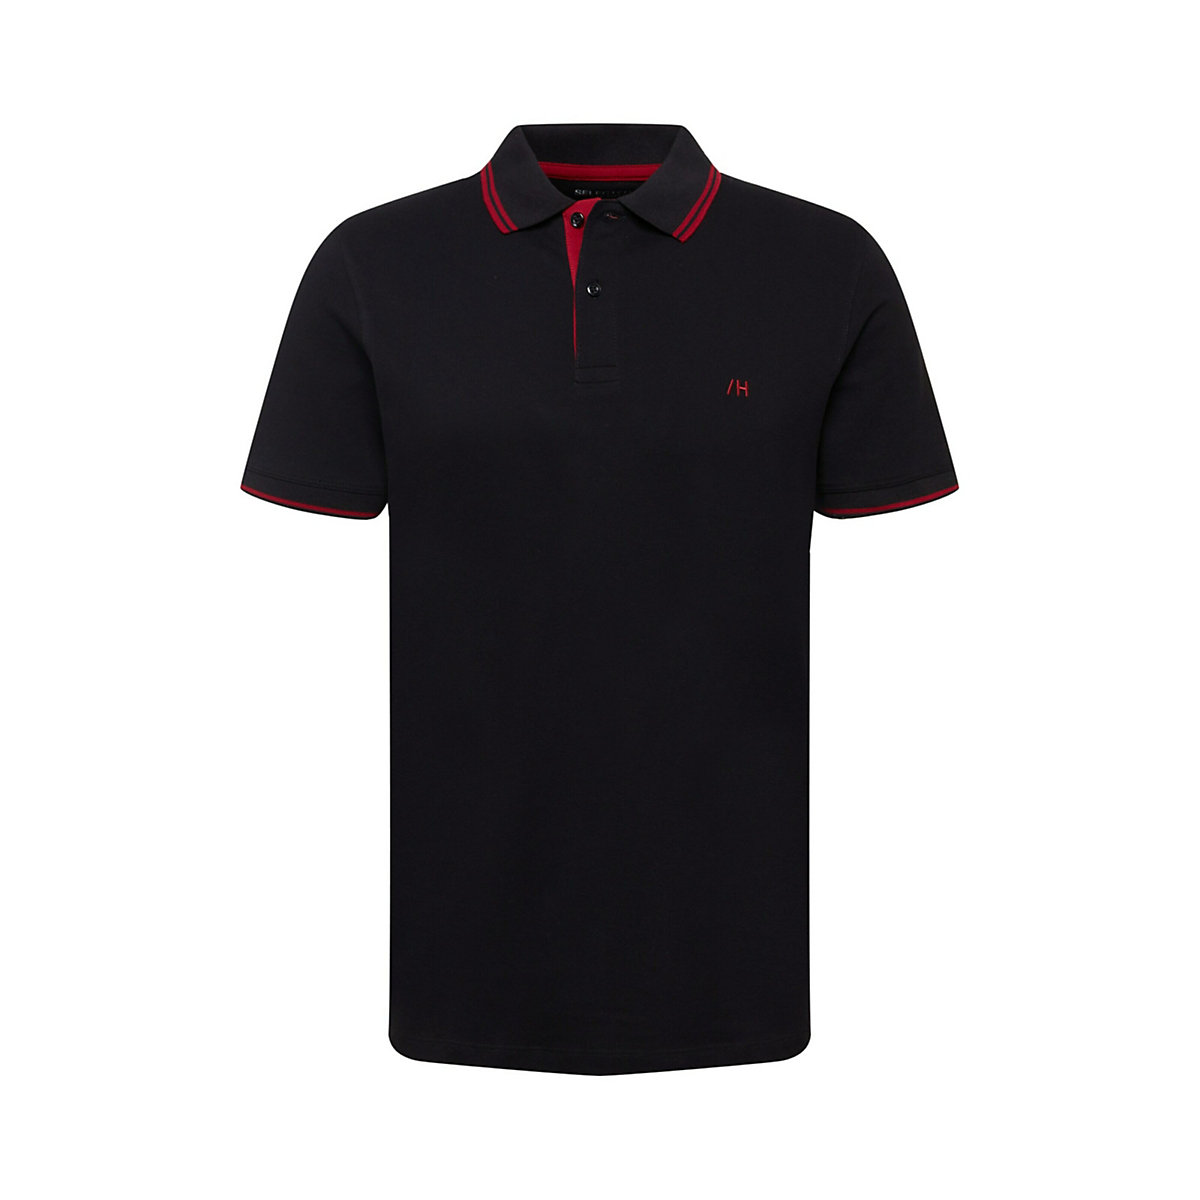 SELECTED HOMME Shirt Aze schwarz/rot